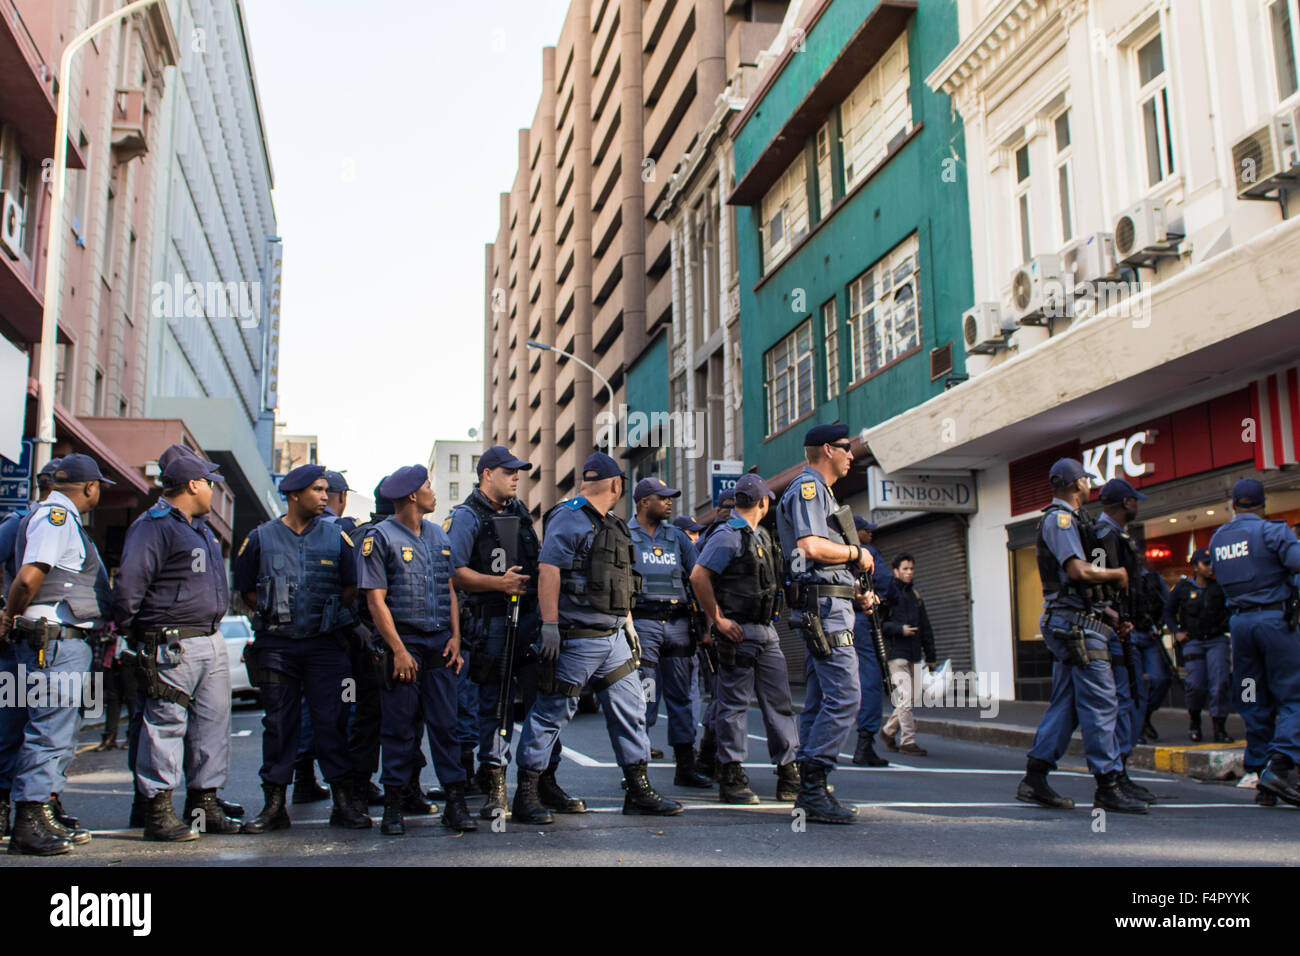 Entre la police et les manifestations des partisans du mouvement feesmustfall # dans le CBD de Cape Town, Afrique du Sud Banque D'Images